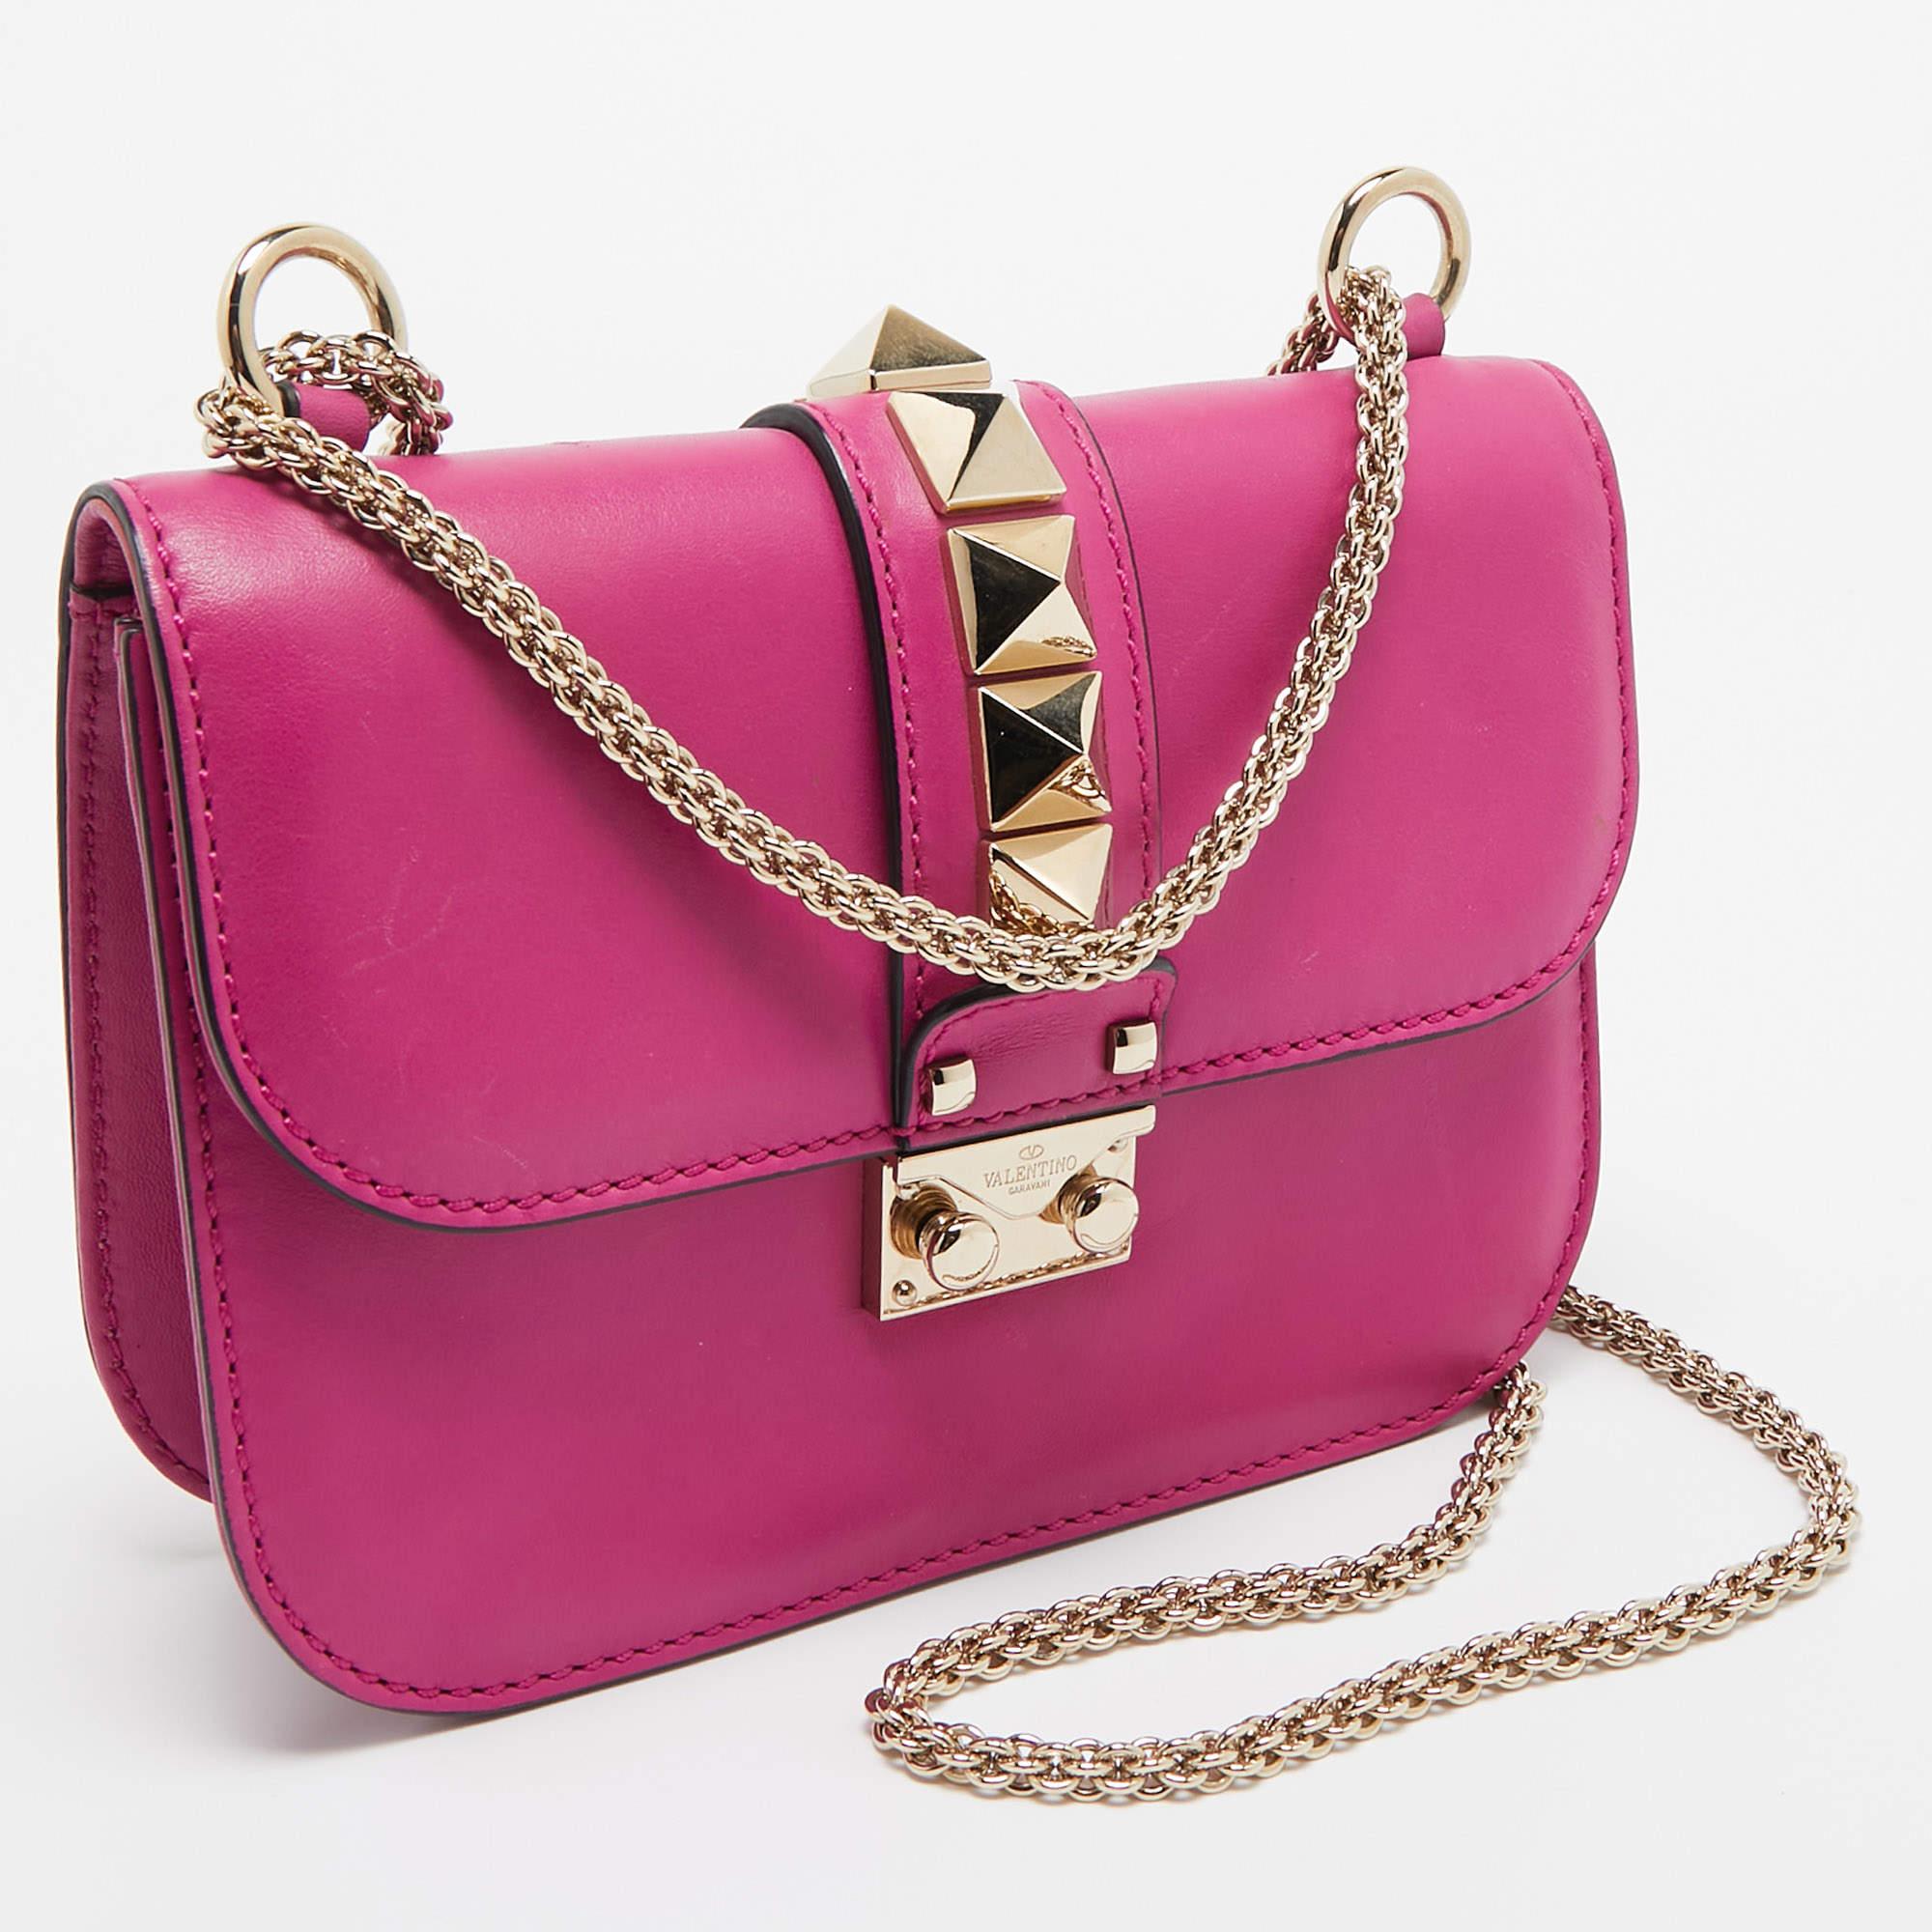 Valentino Fuchsia Leather Small Rockstud Glam Lock Flap Bag In Good Condition For Sale In Dubai, Al Qouz 2